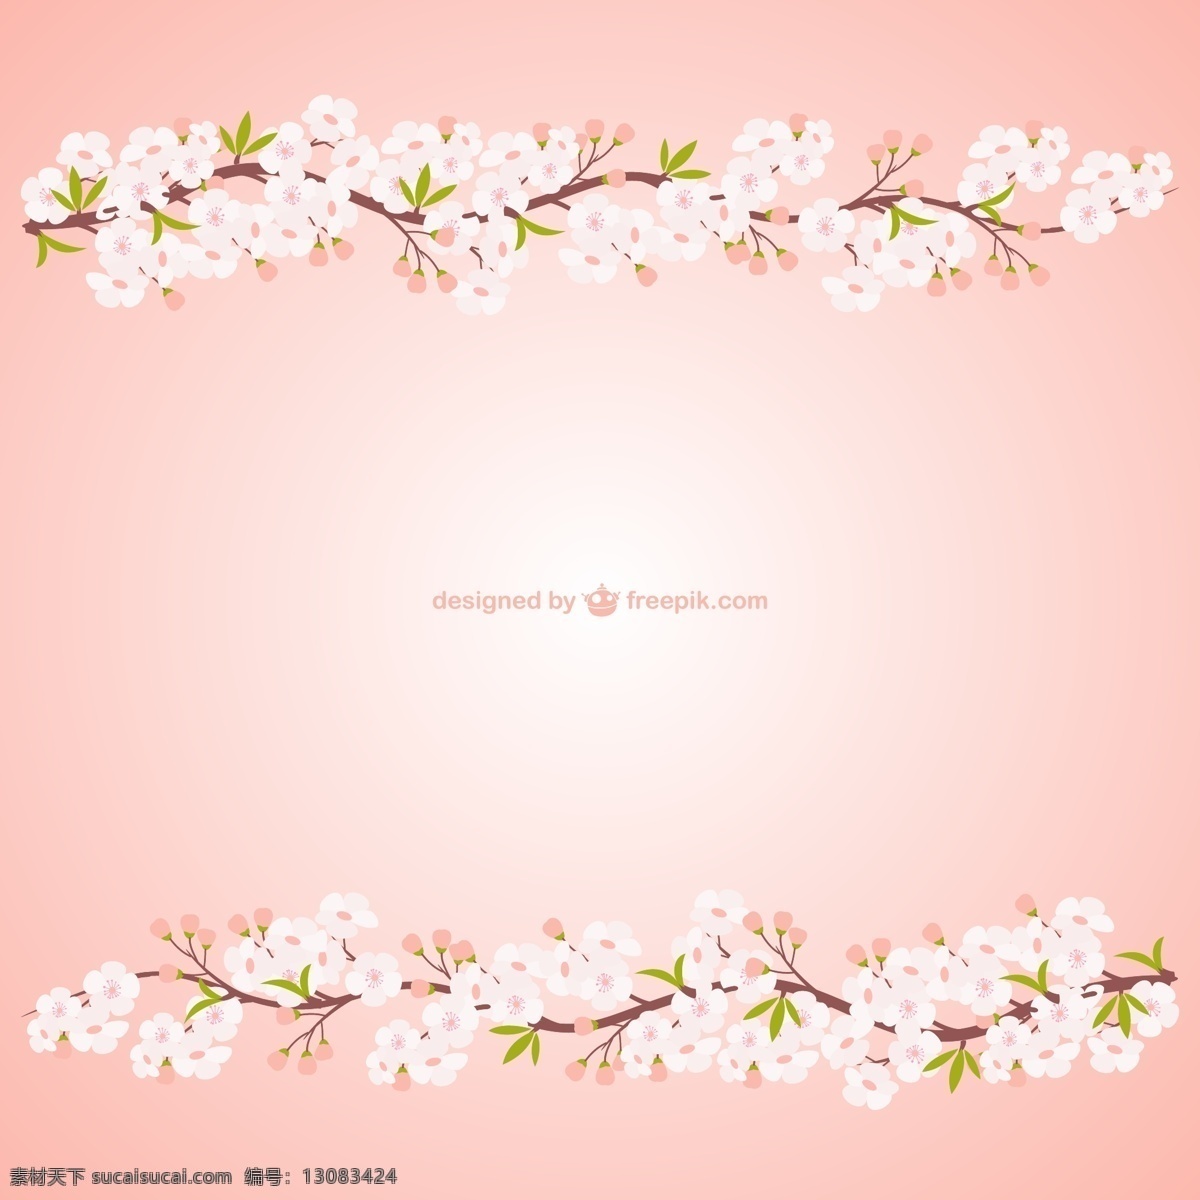 白色 桃花 枝 背景图片 花枝 花卉 背景 对称 矢量图 矢量 高清图片